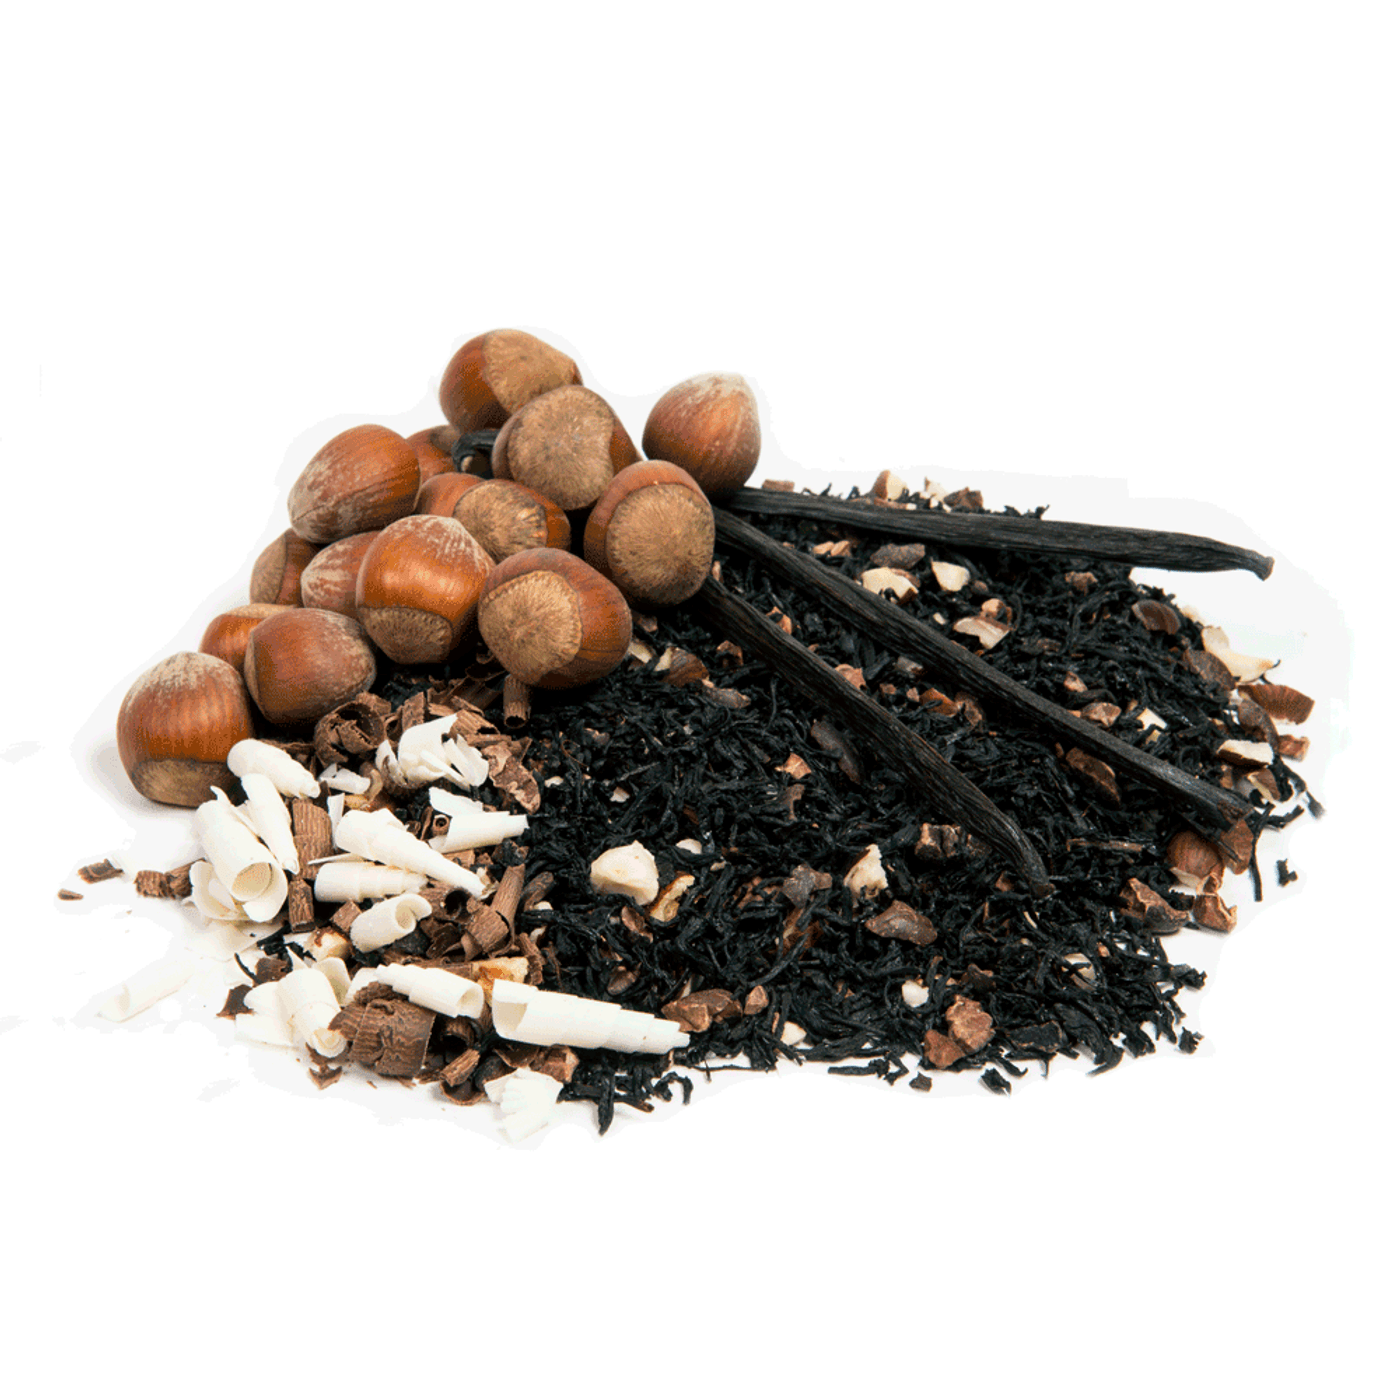 Kai loose Leaf Tea - Chocolate Hazelnut